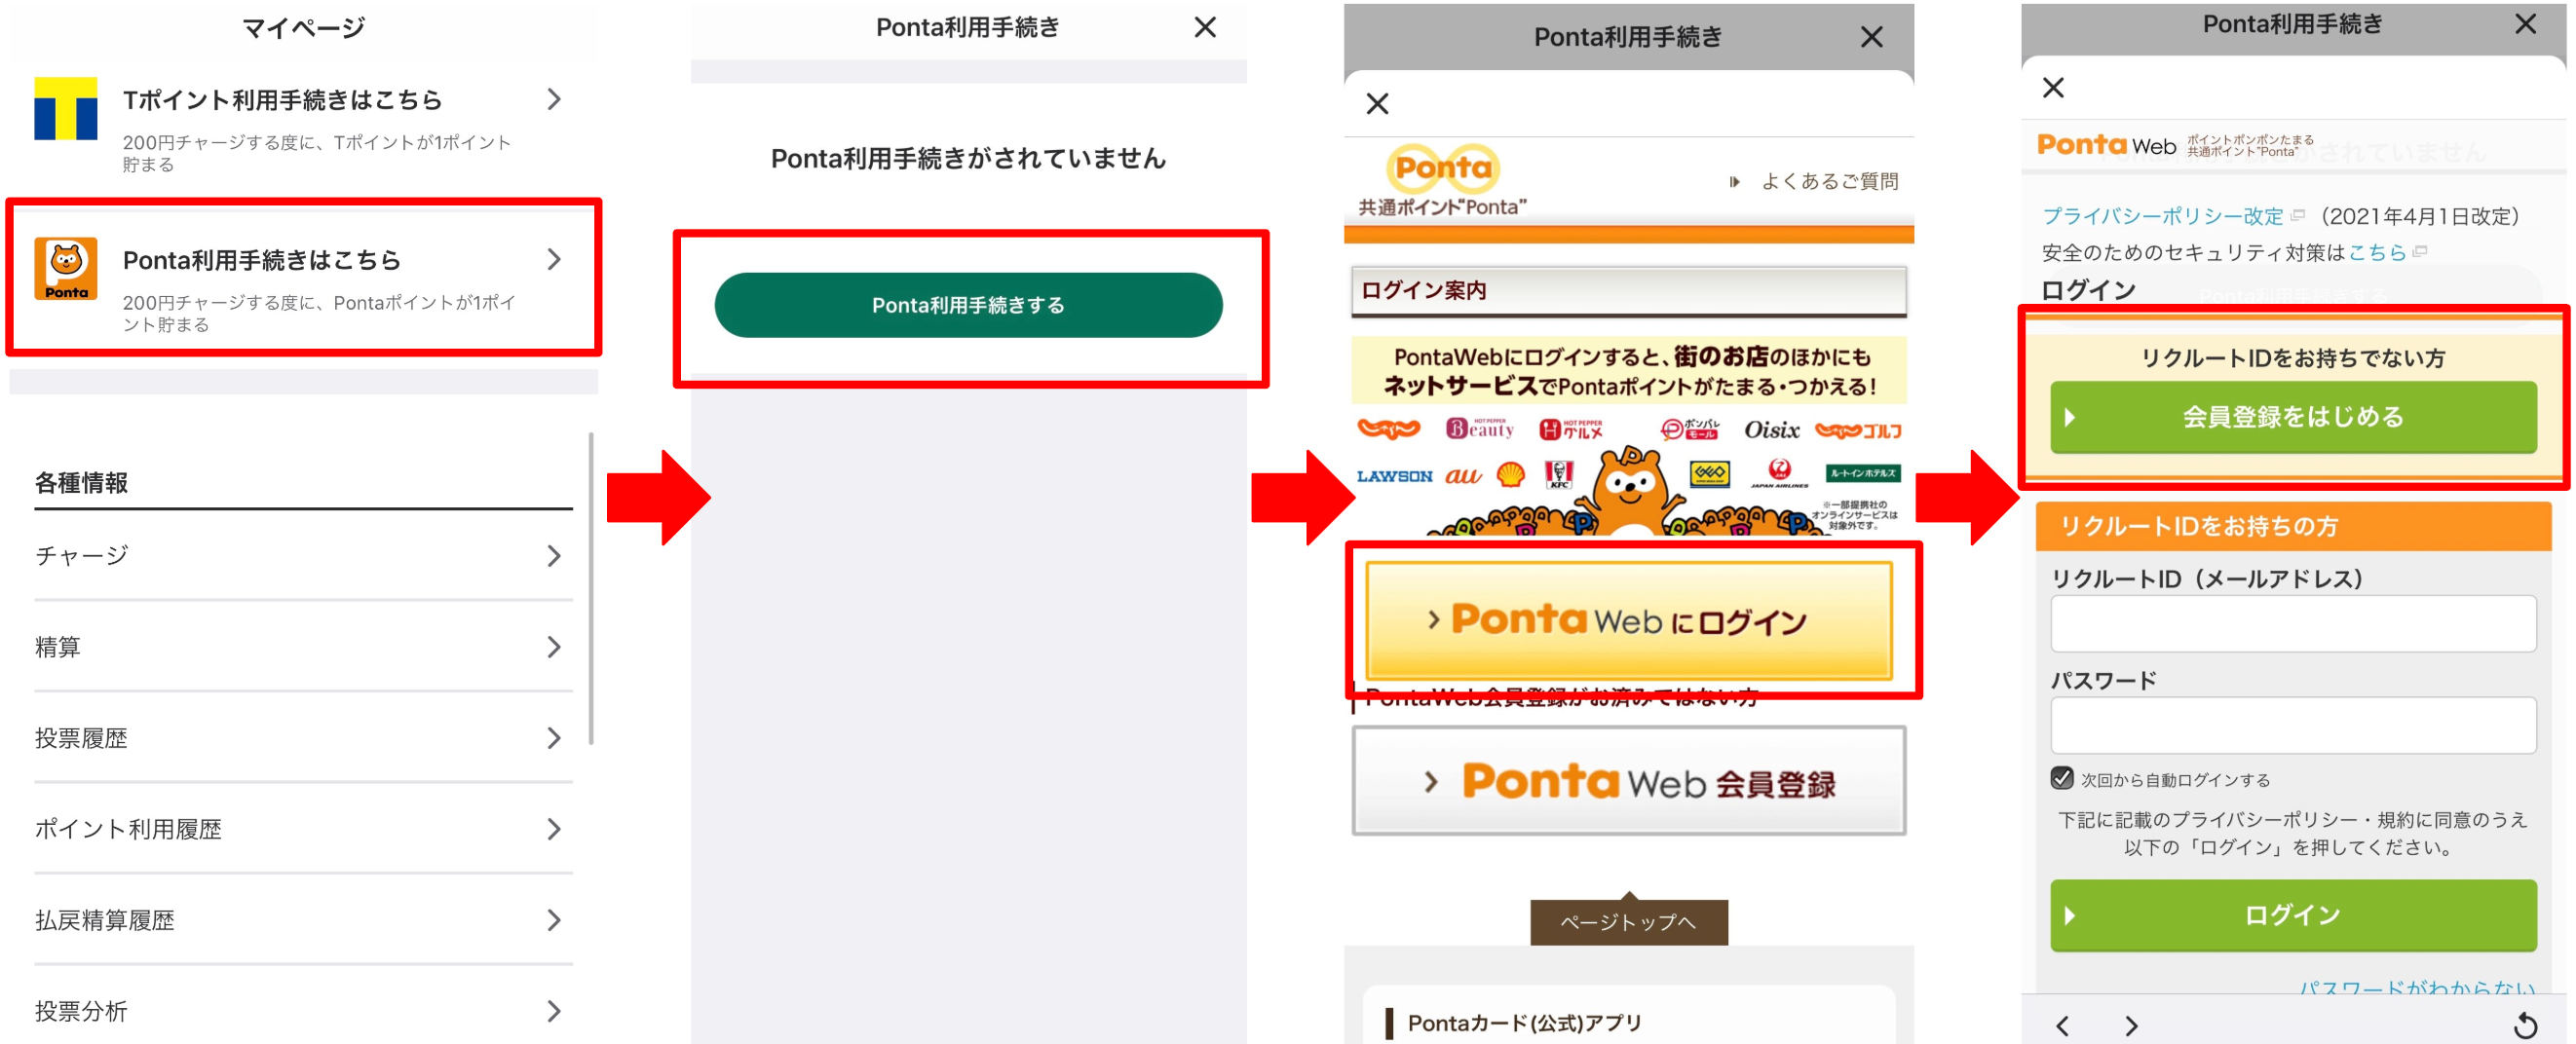 マイページのPonta利用手続きはこちらを押下し、Ponta利用手続きを開始する